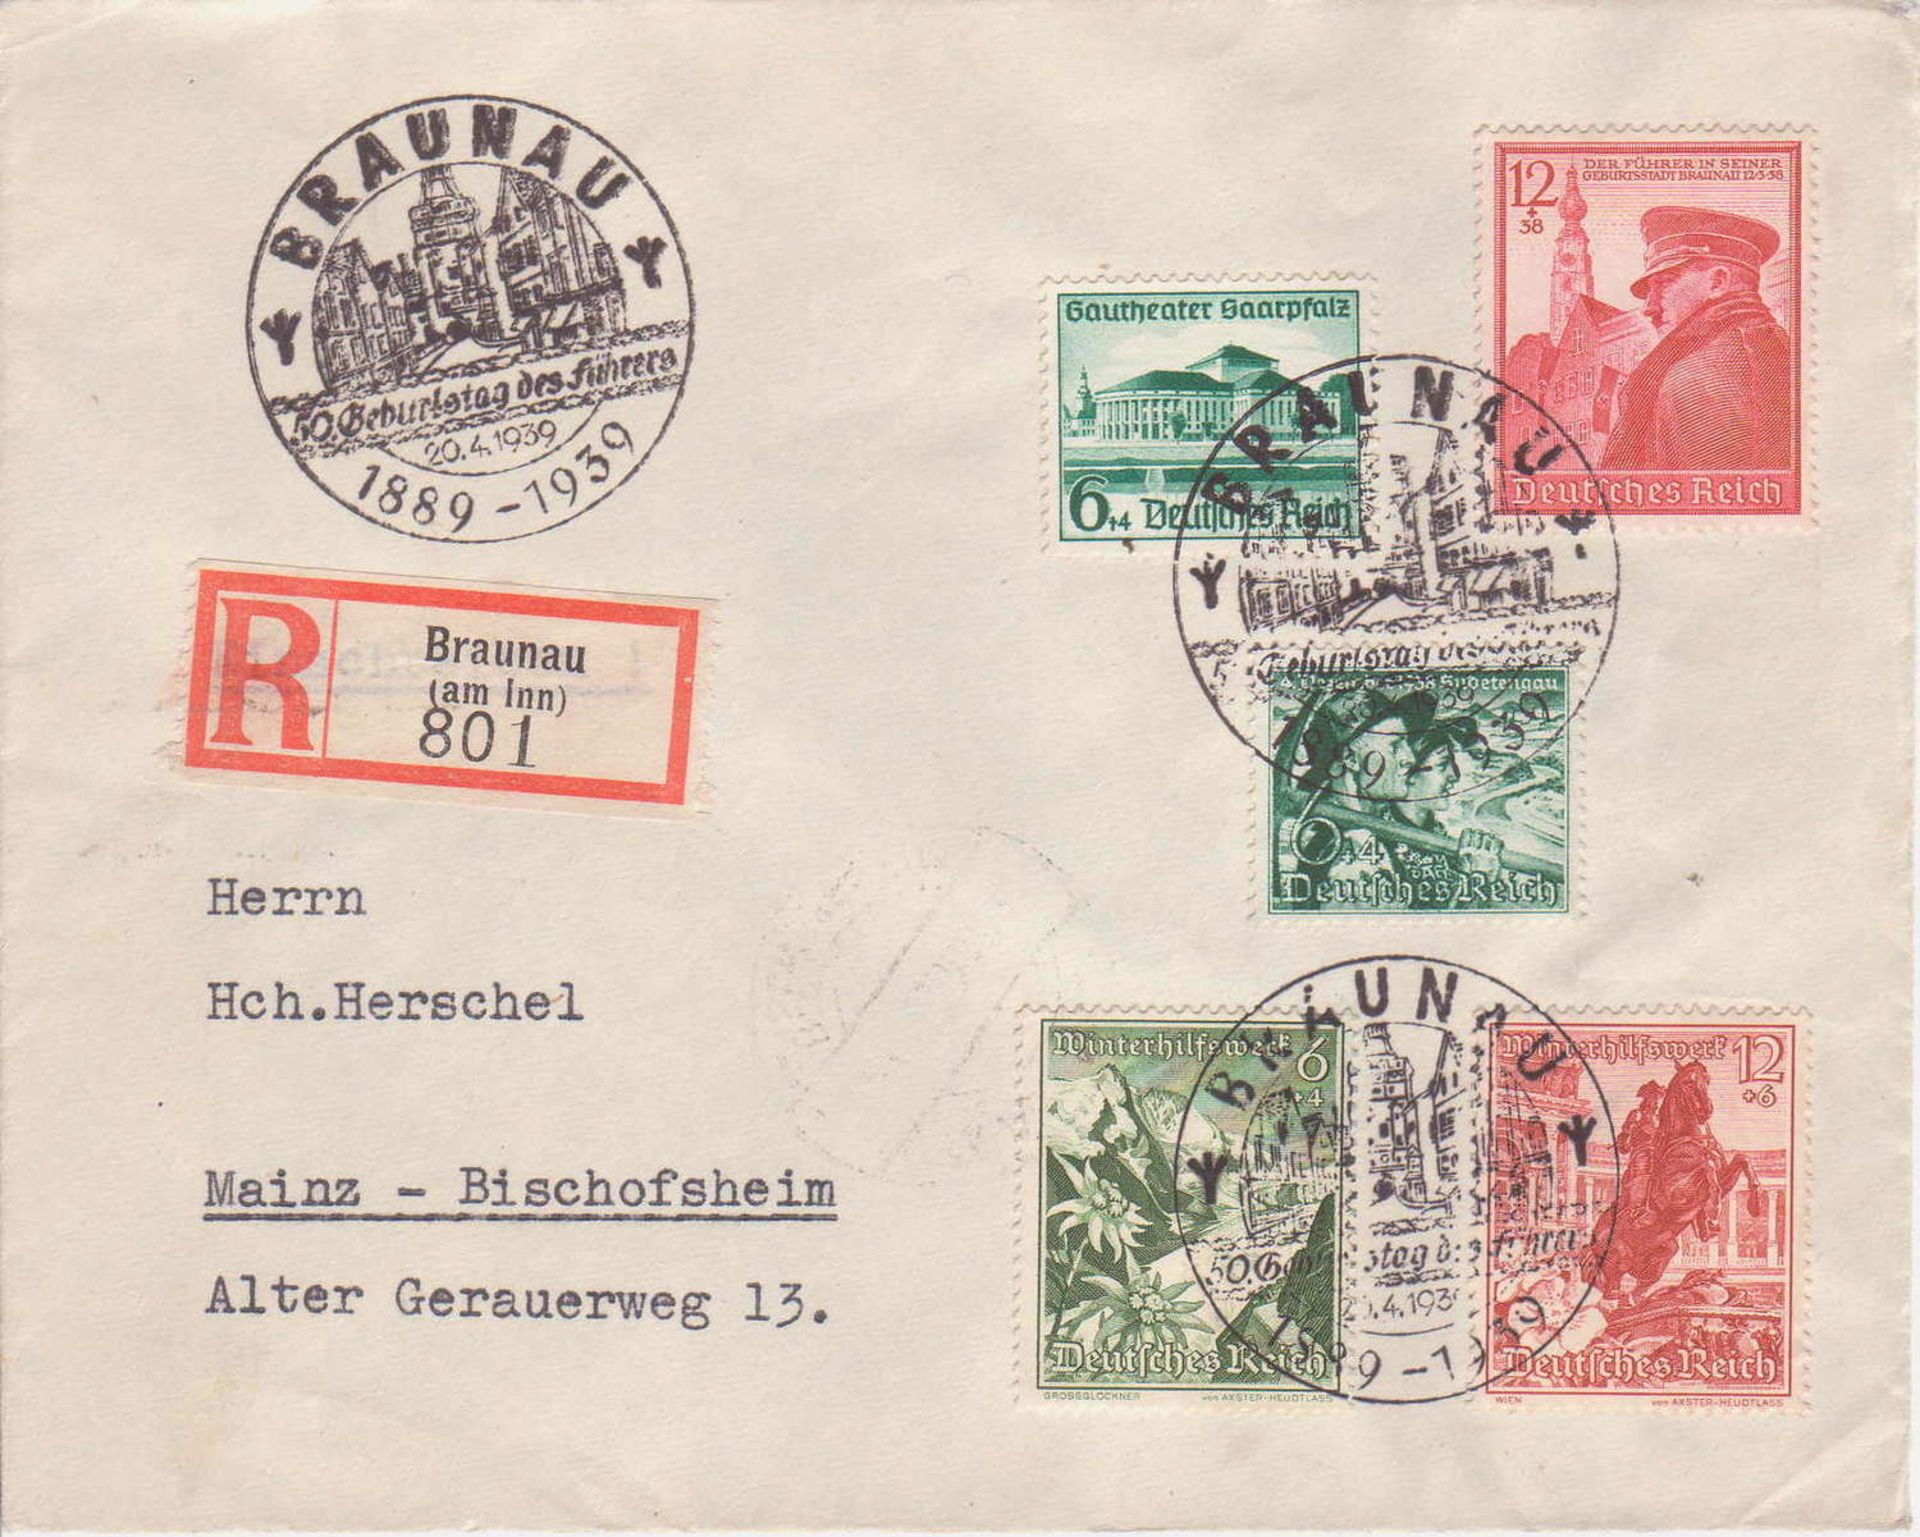 Deutsches Reich / Österreich 1939, R - Brief aus Braunau nach Mainz. MiF. Mit Sonderstempel "50.